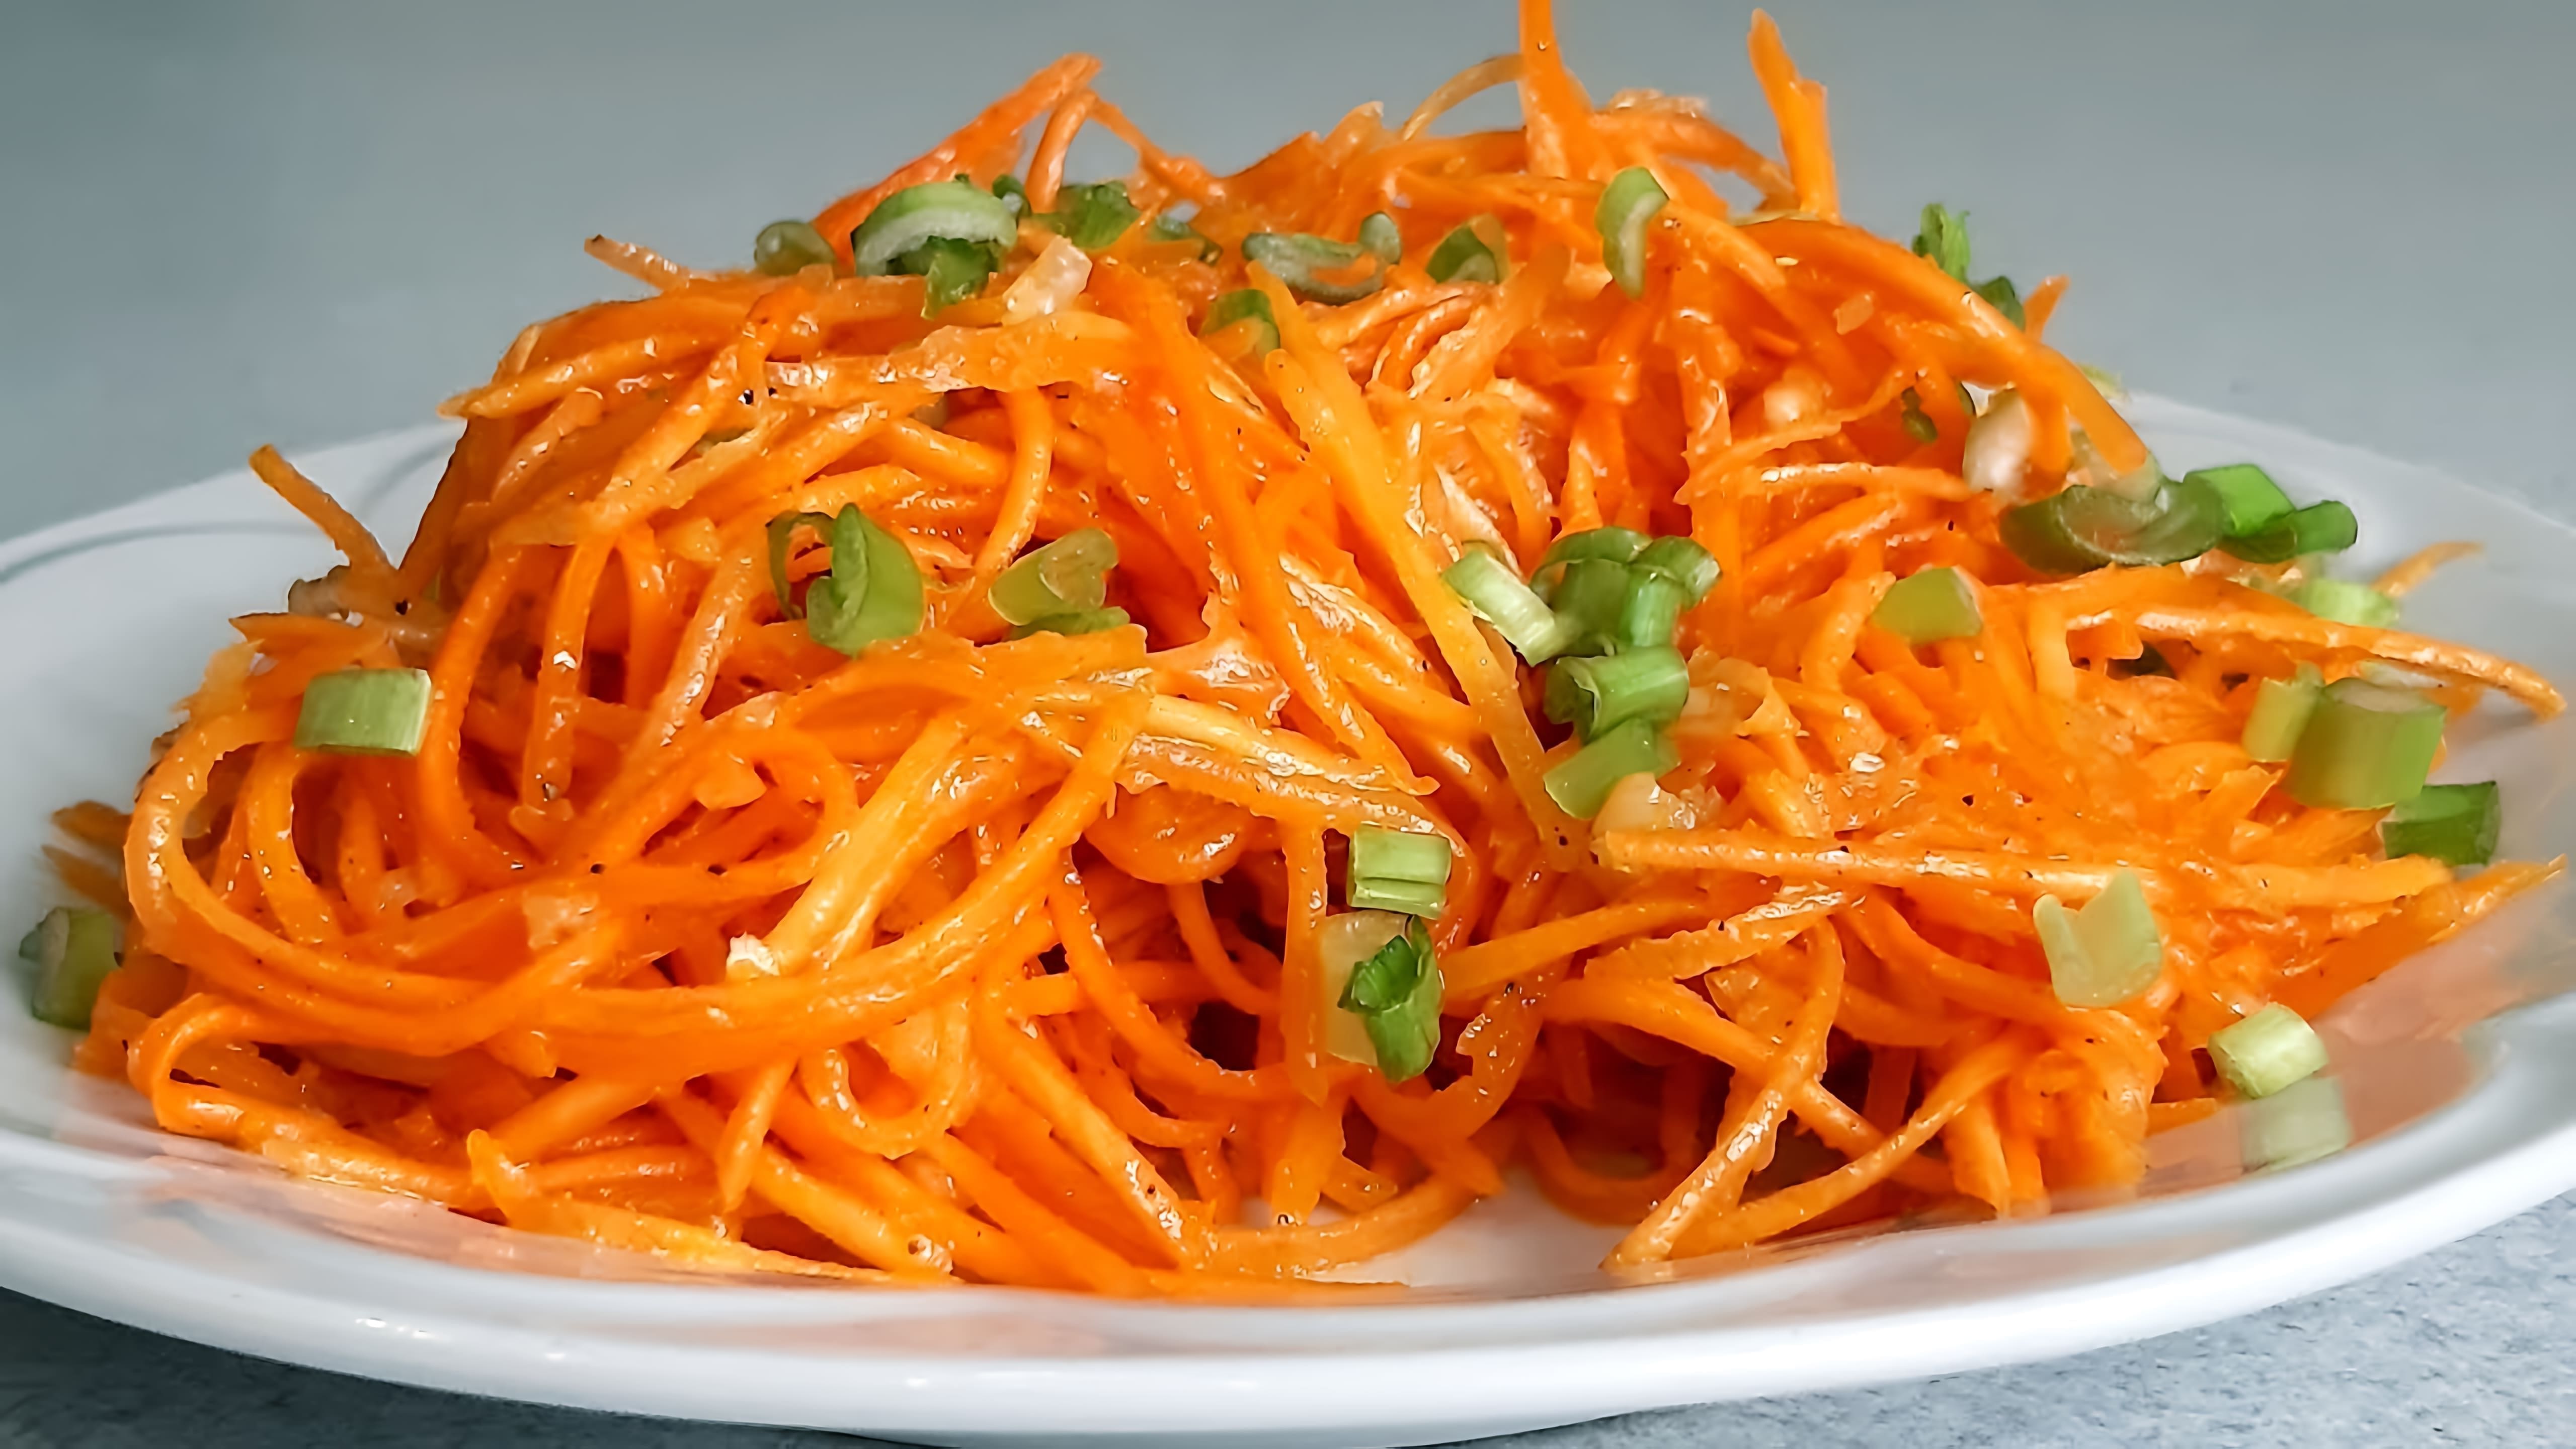 В этом видео демонстрируется процесс приготовления классического рецепта моркови по-корейски или морковного салата